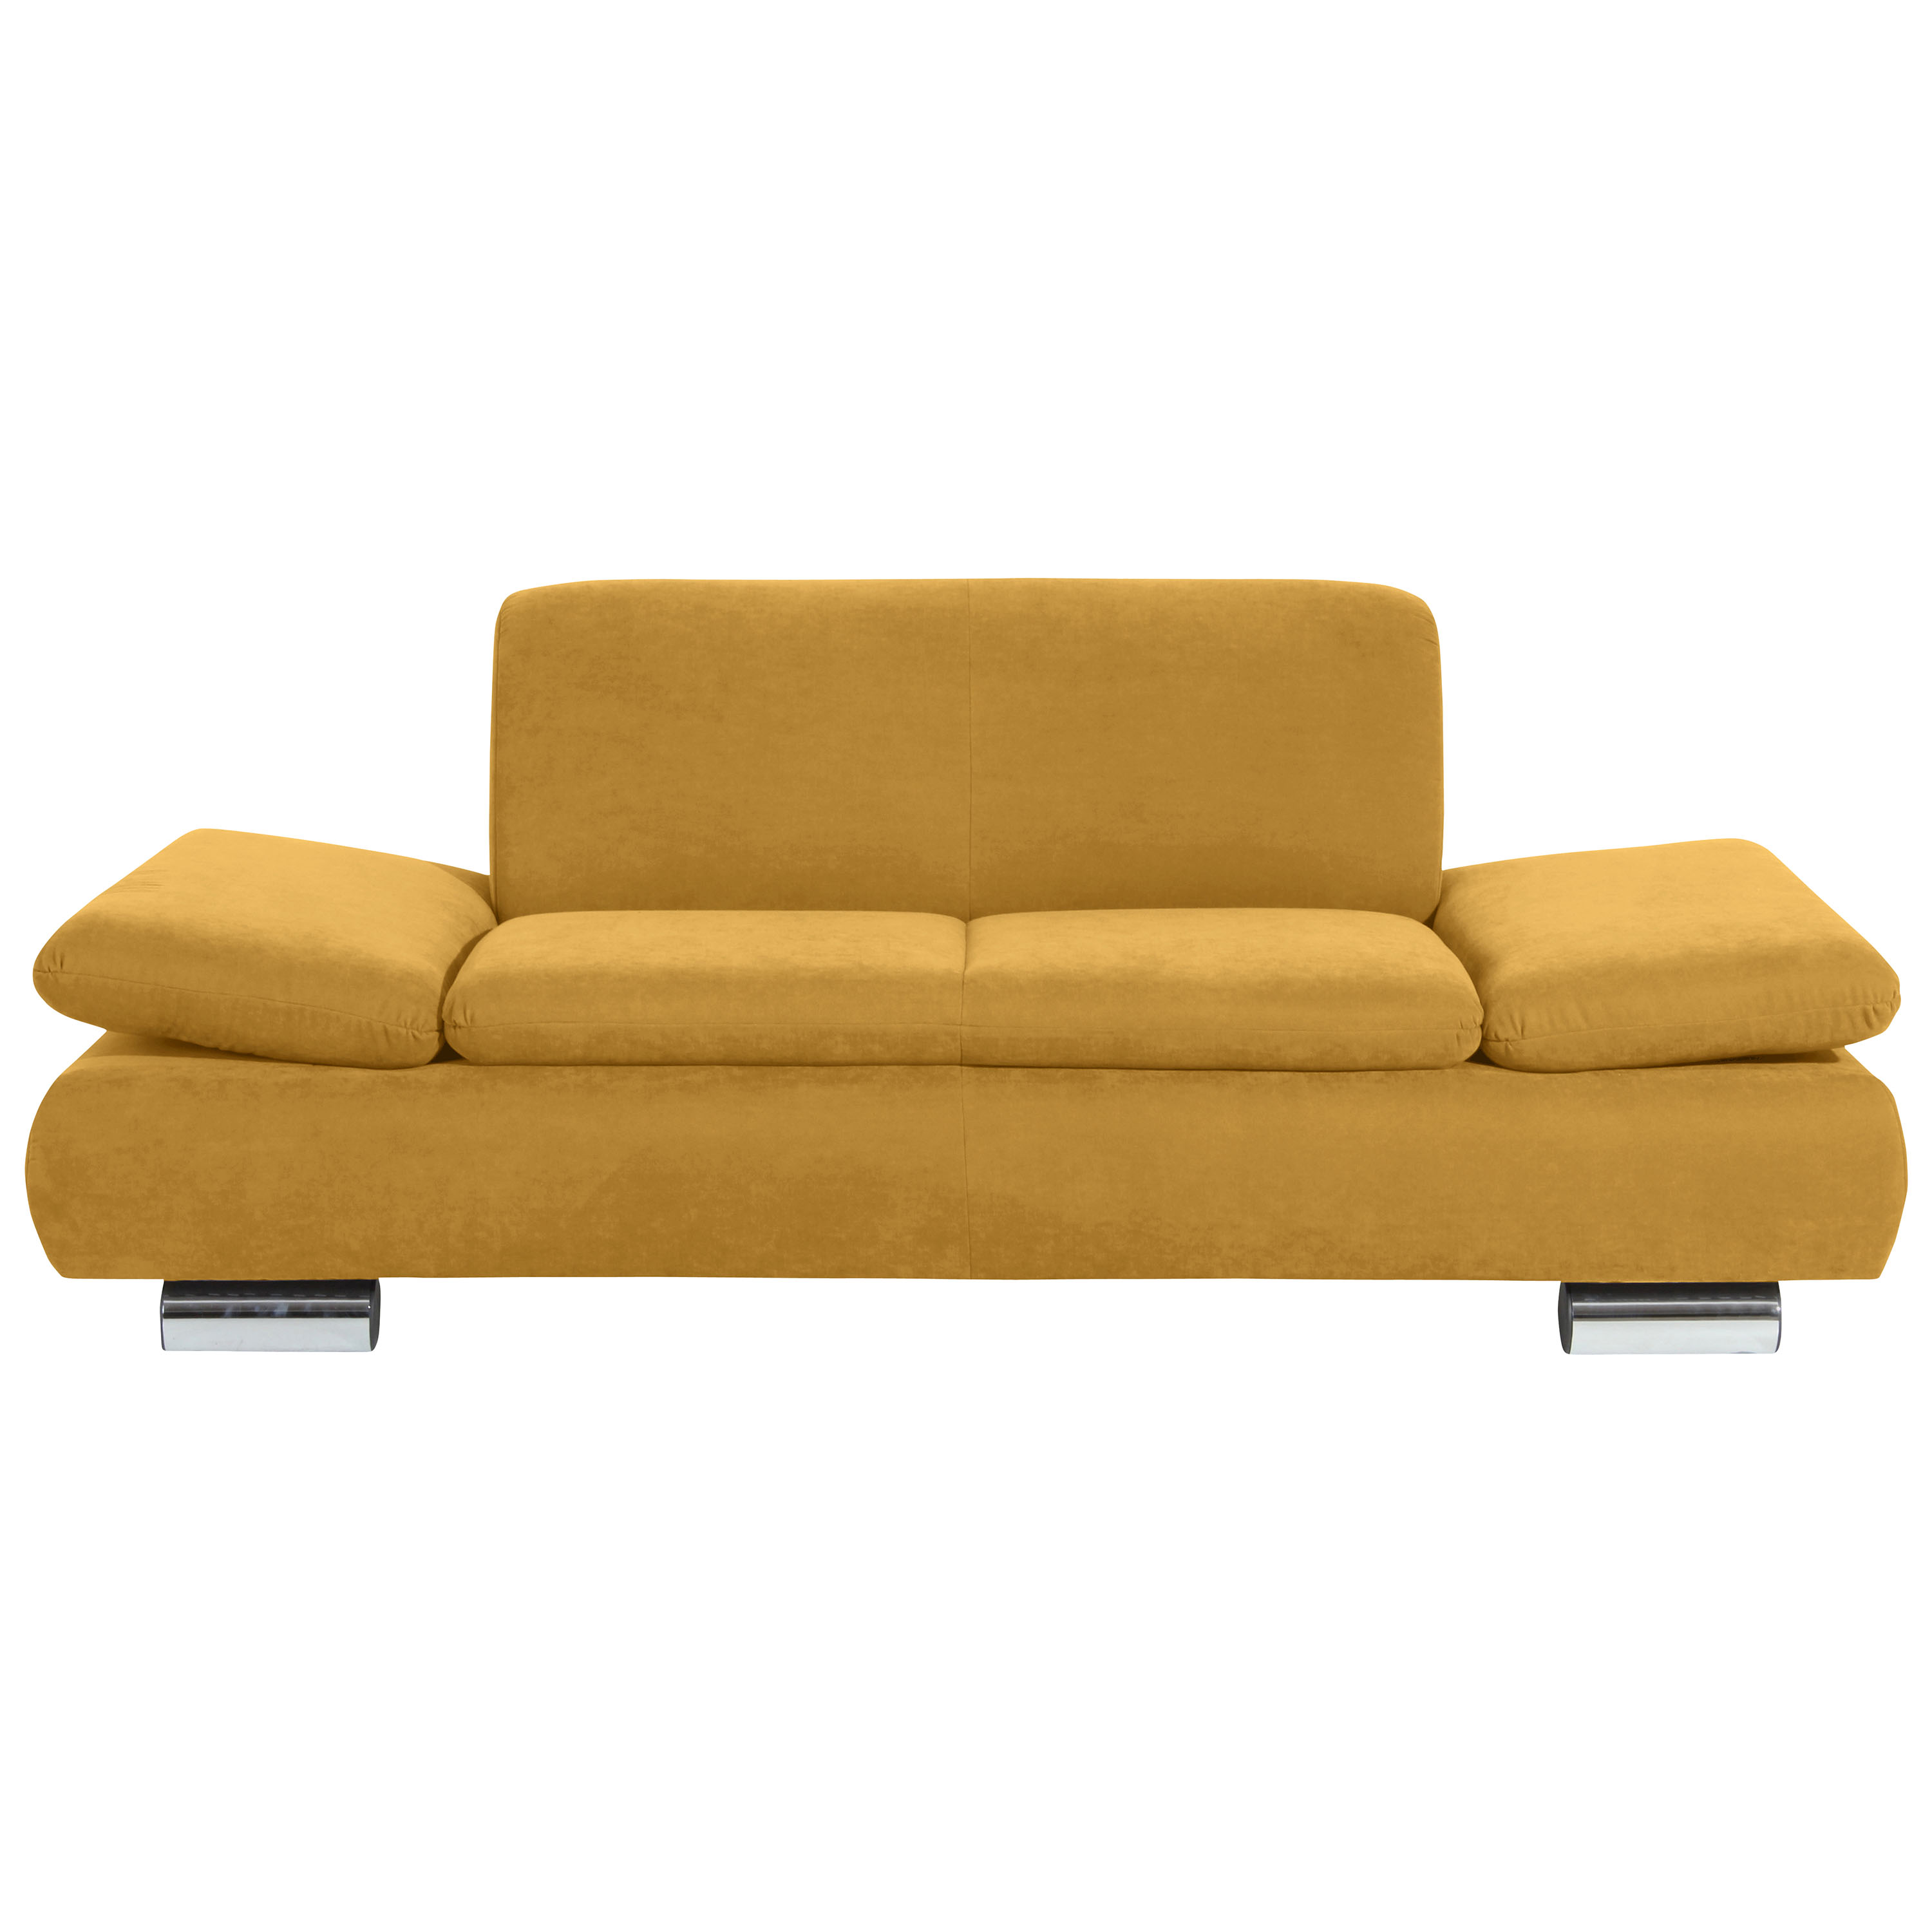 frontansicht von einem 2-sitzer sofa im mais farbton mit verchromten metallfüssen